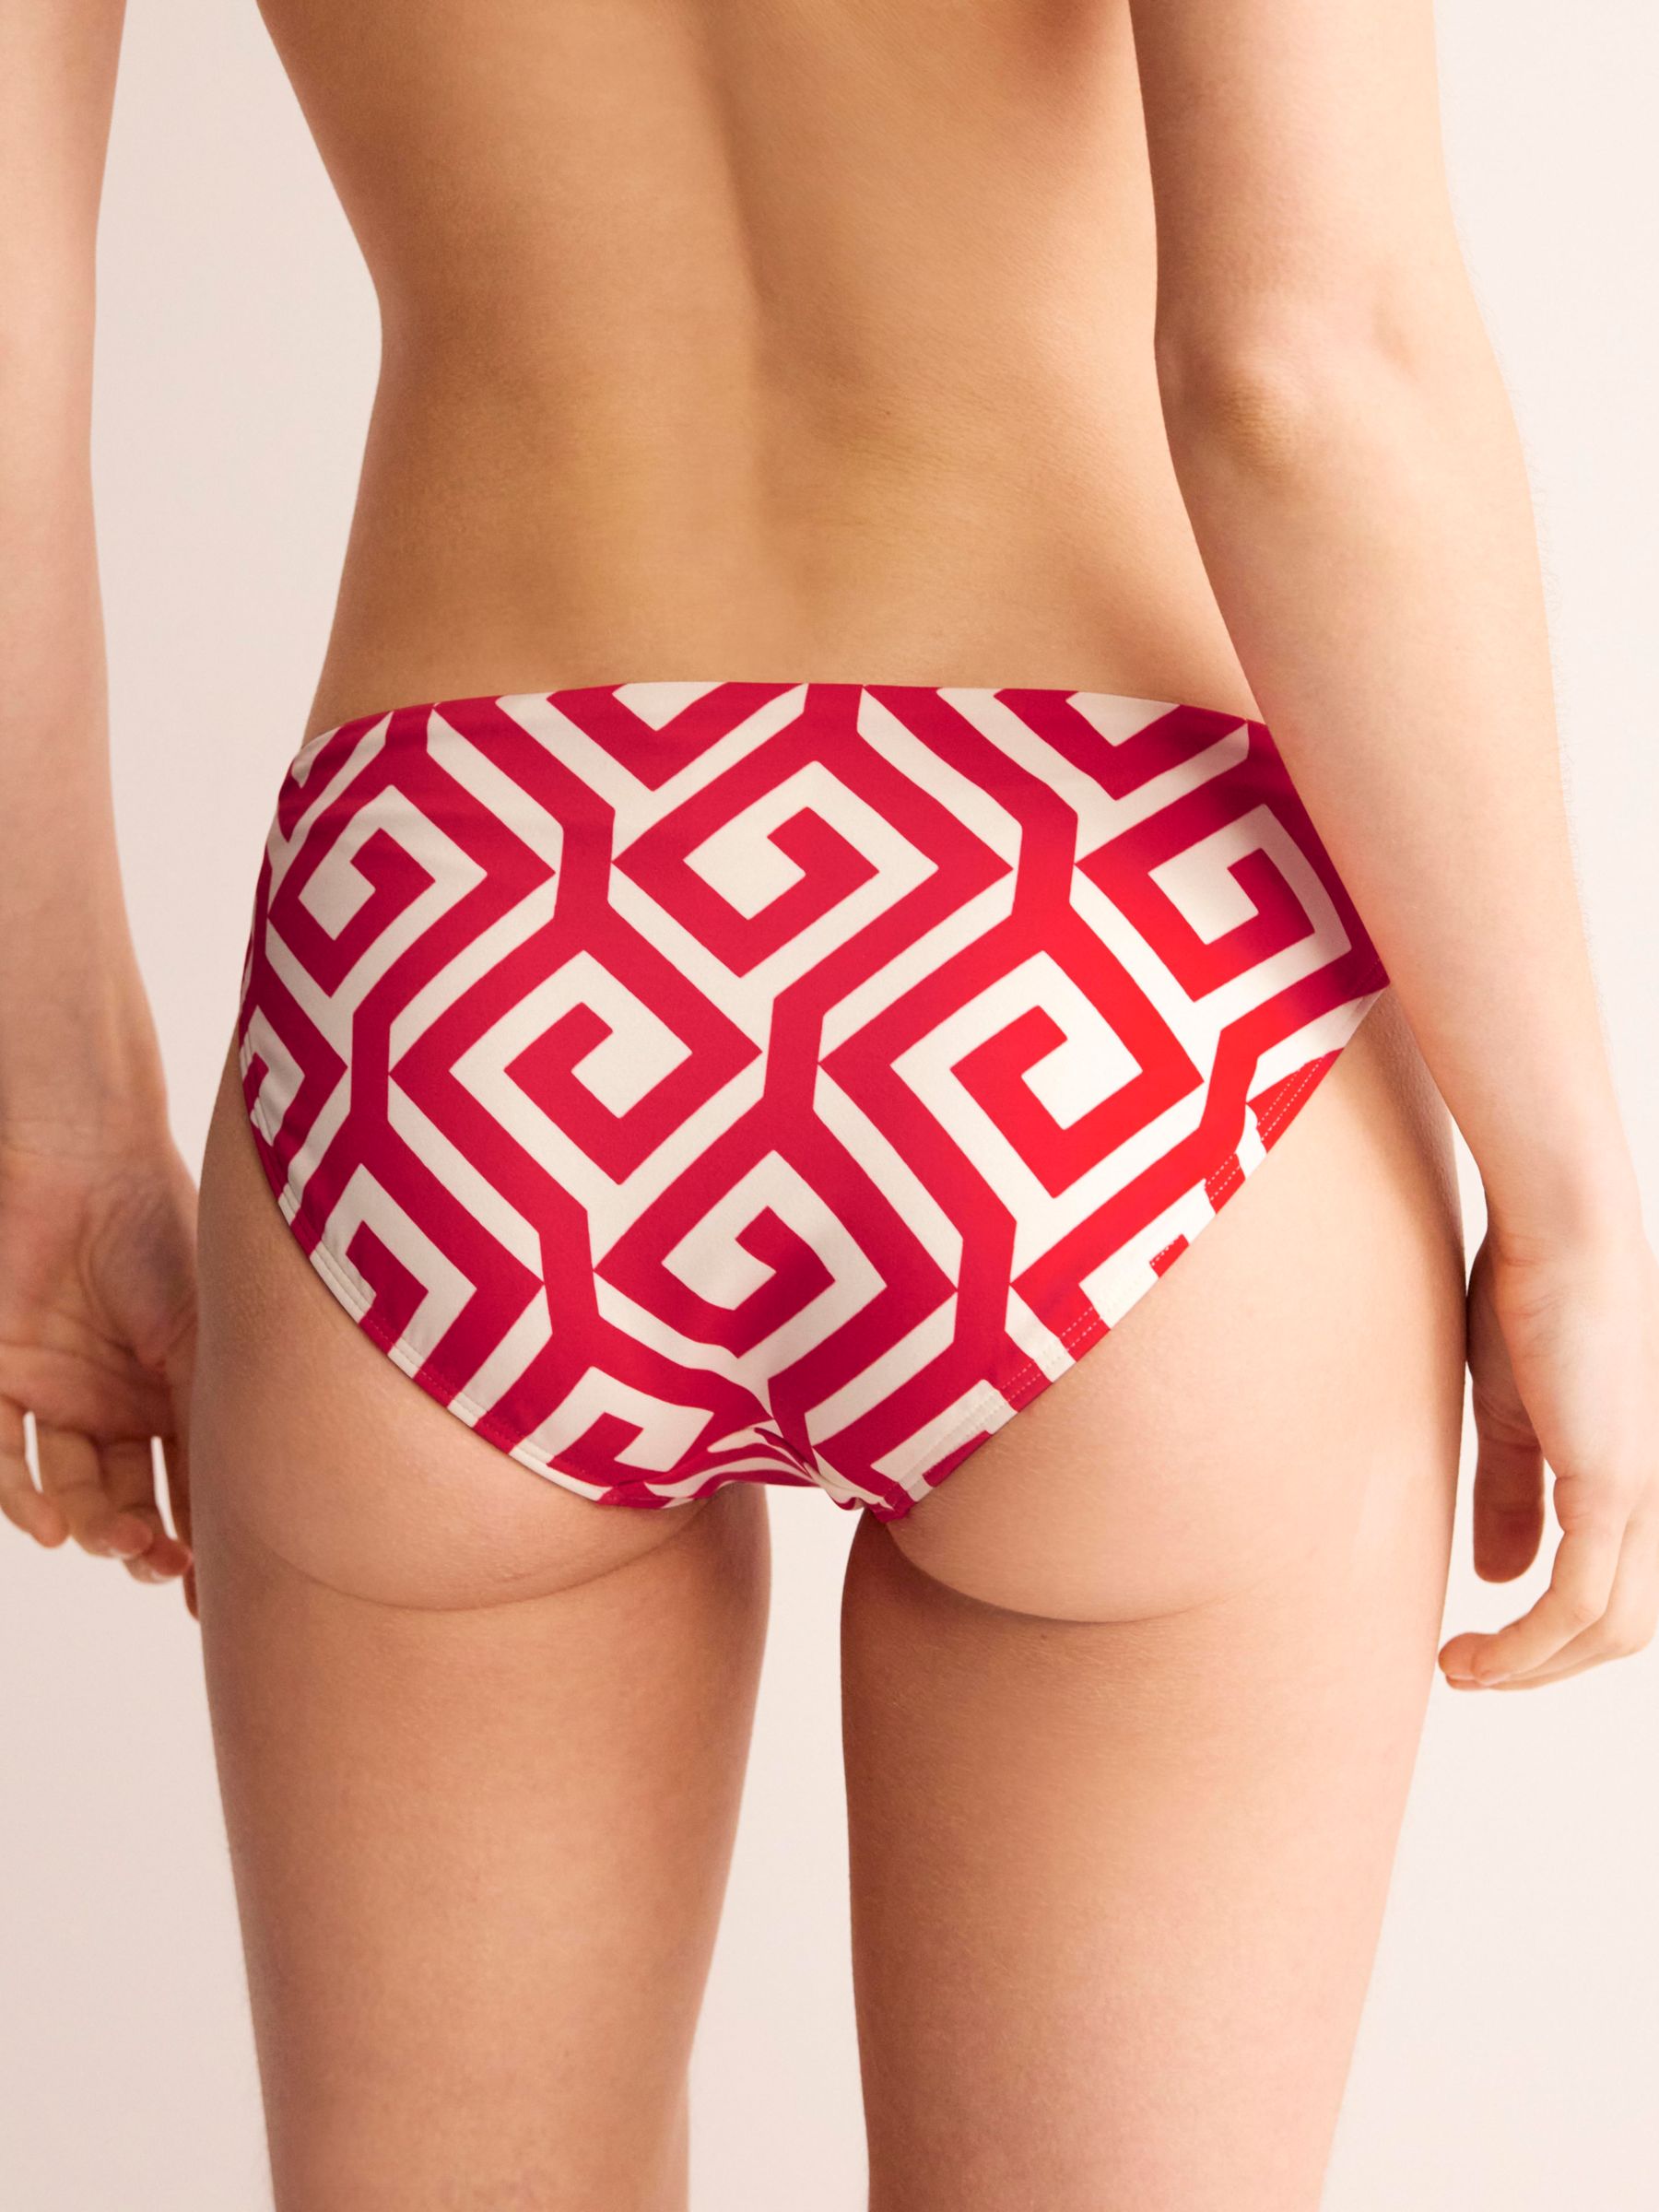 Boden Maze Print Bikini Bottoms, Flame Scarlet, 10